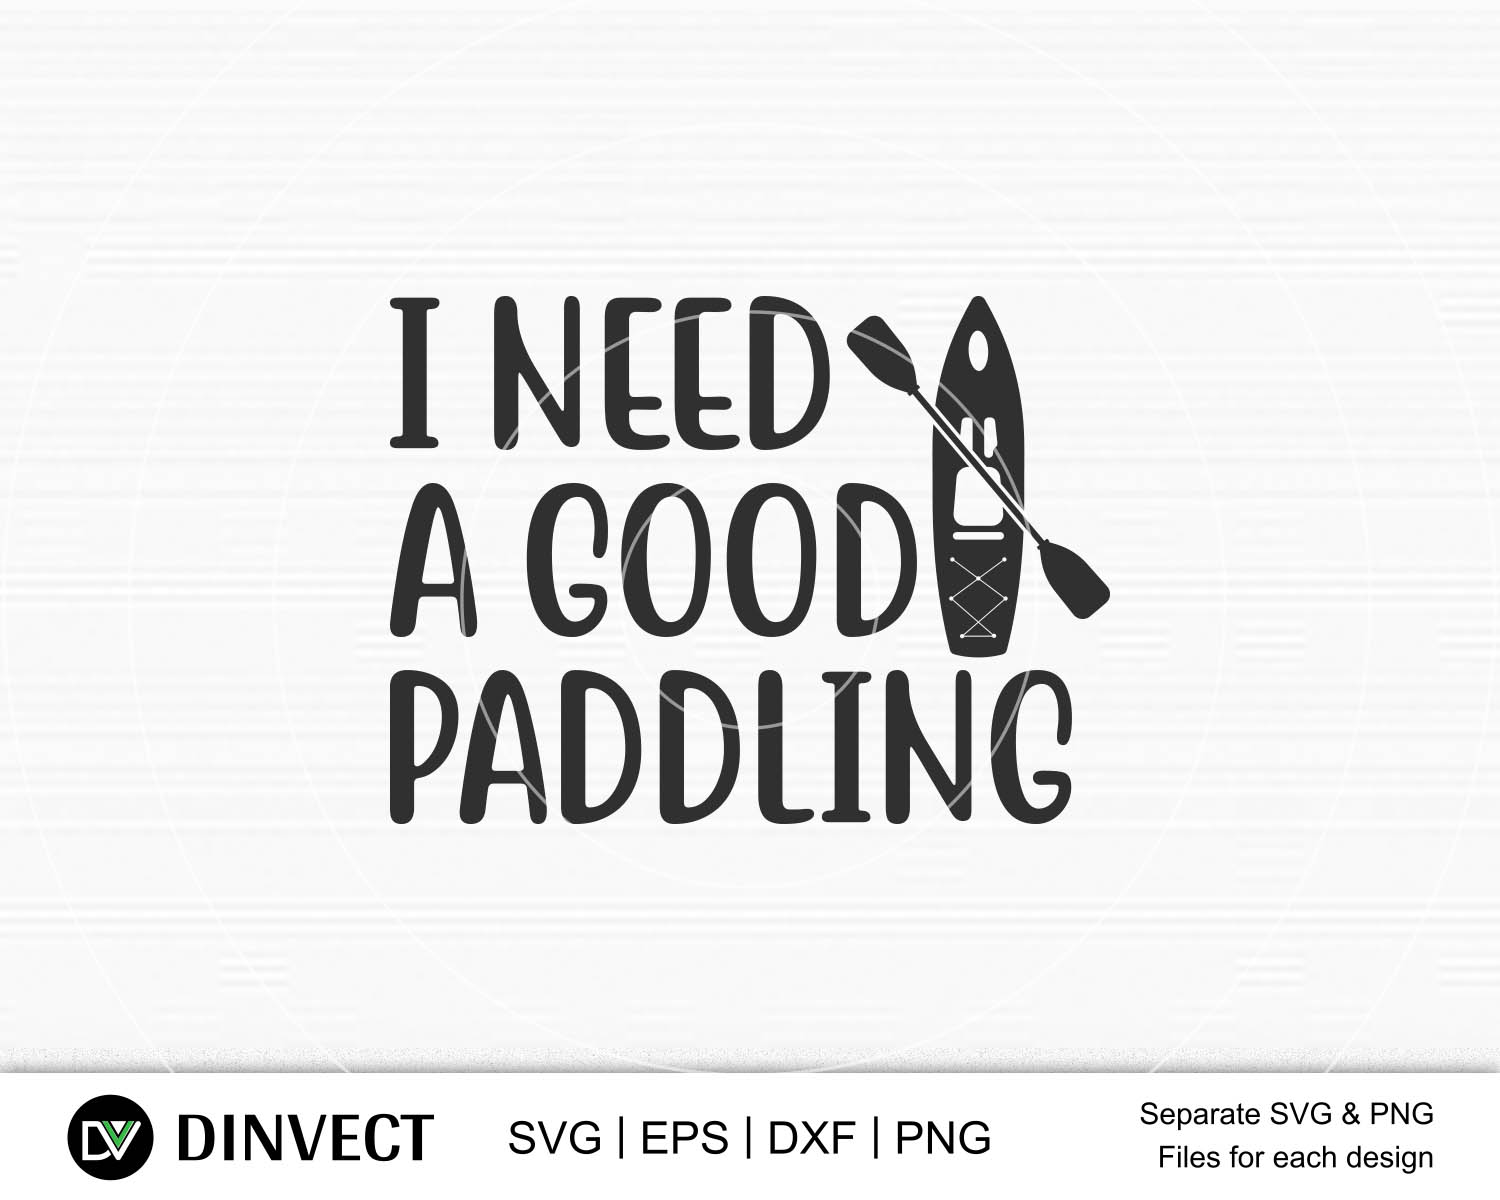 Free Free 239 Live Love Kayak Svg SVG PNG EPS DXF File